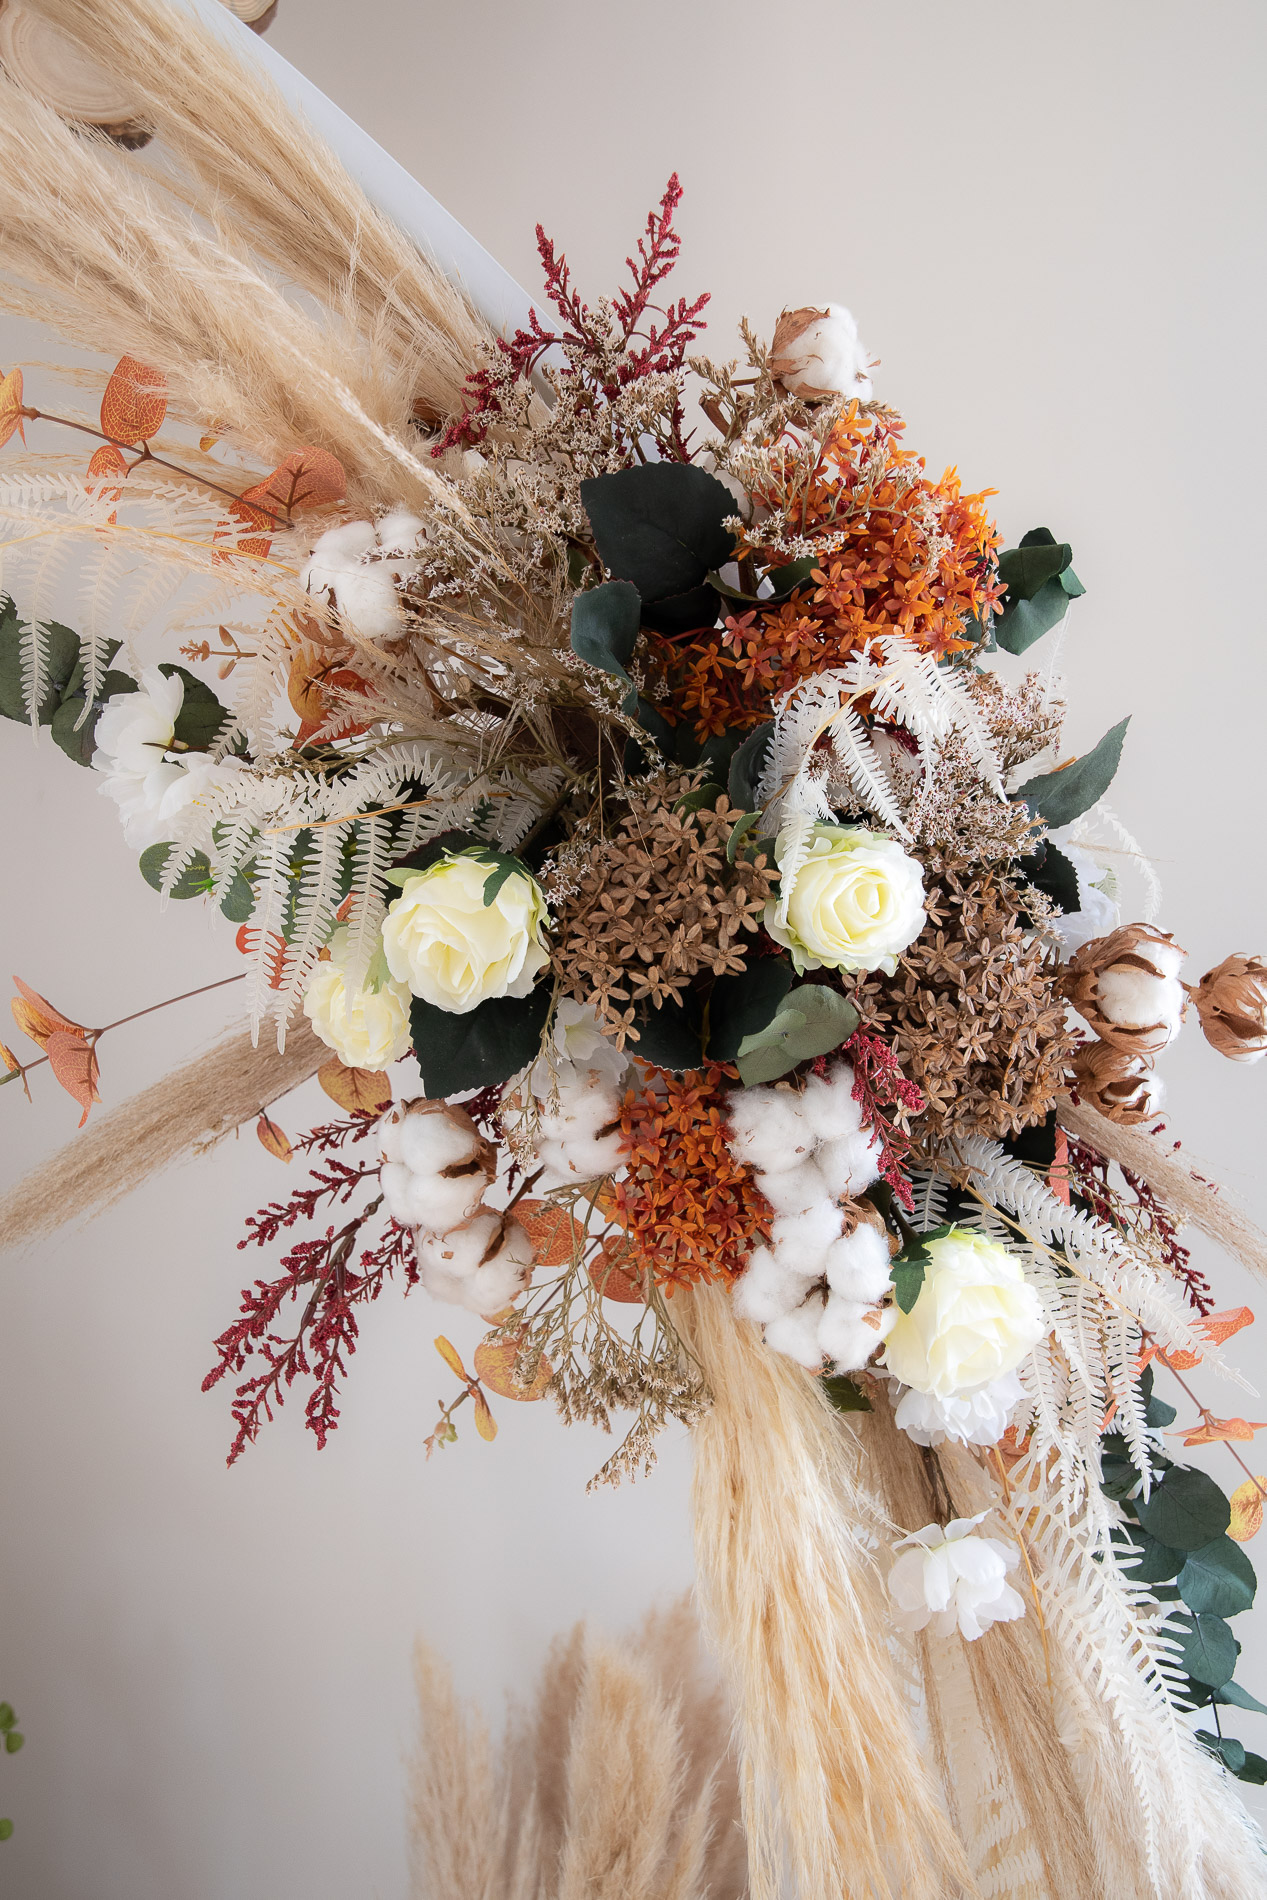 Photo décoration florale réalisé par Anais Vermeire - photo réalisée par Azana Justine Putigny